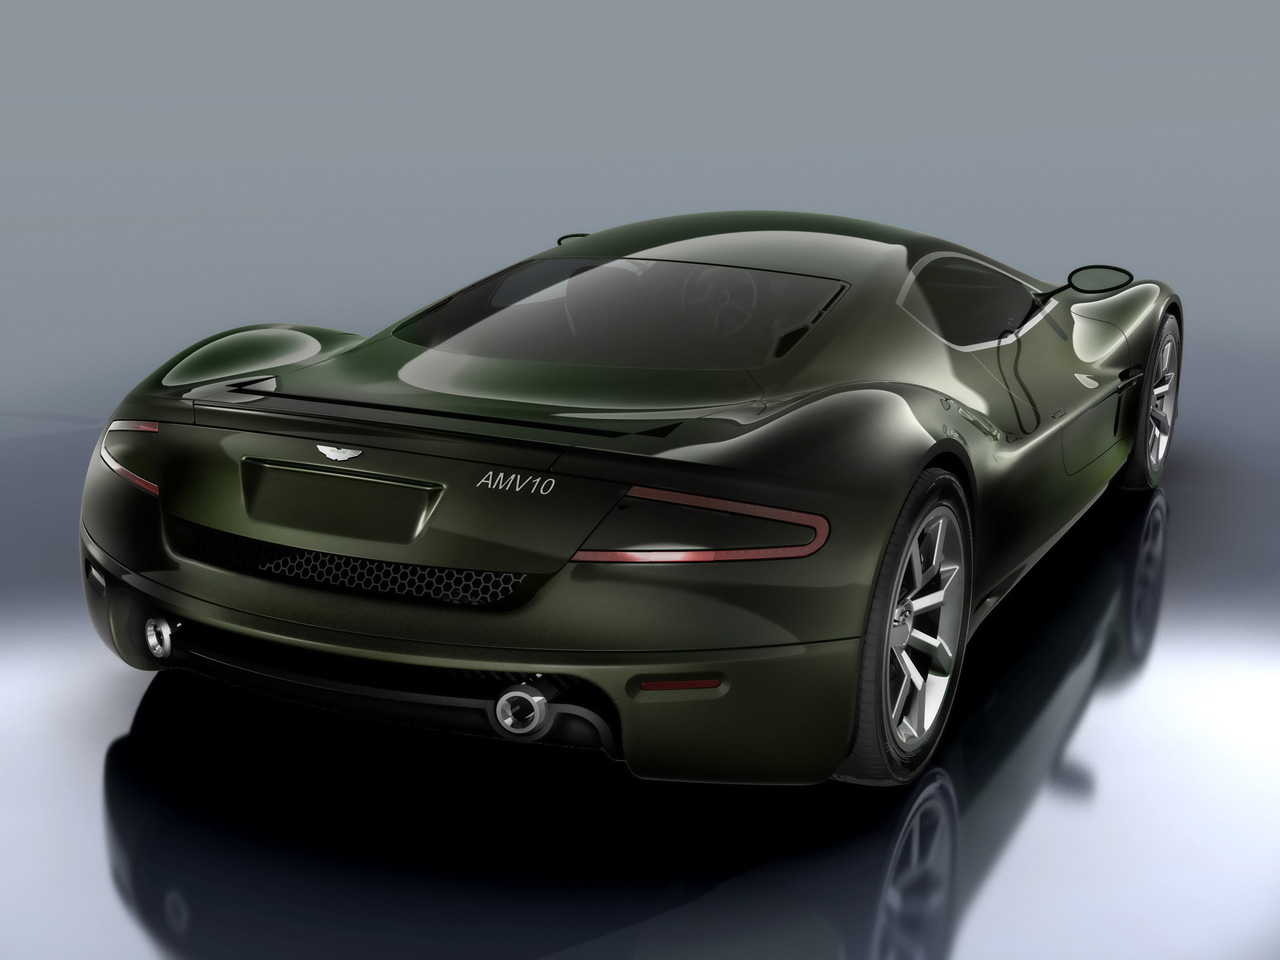 Aston Martin AMV10 HD wallpapers, Desktop wallpaper - most viewed